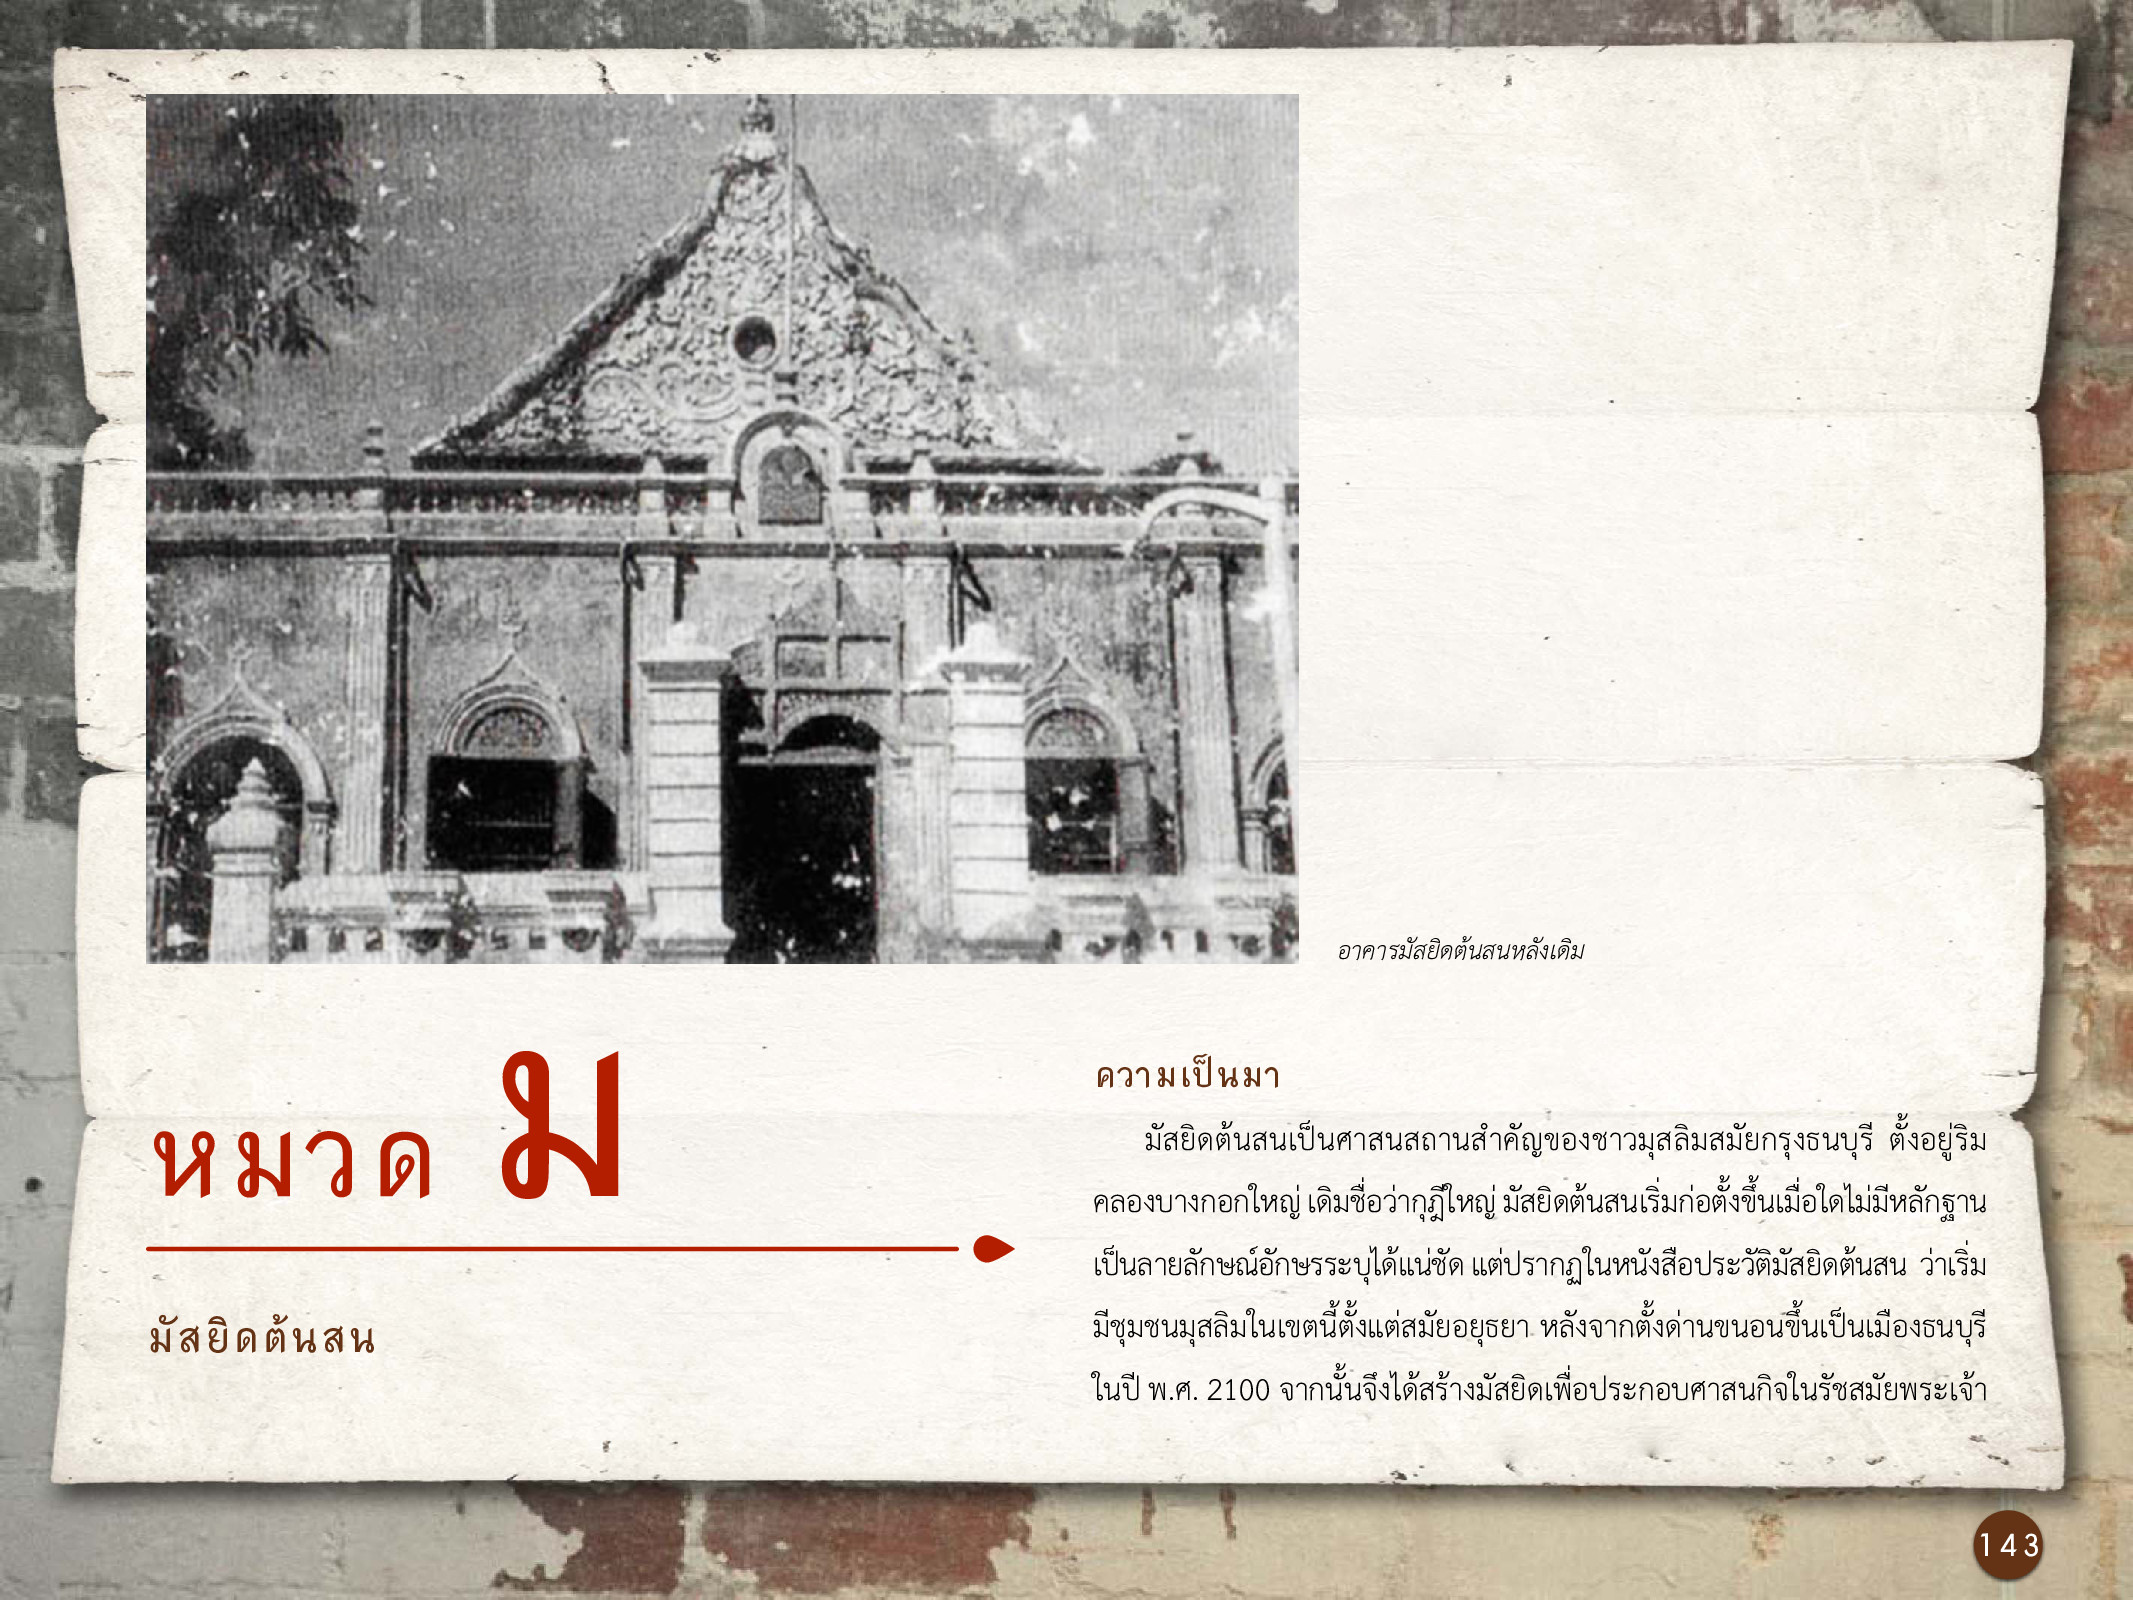 ศิลปกรรมกรุงธนบุรี ./images/encyclopedia/143.jpg